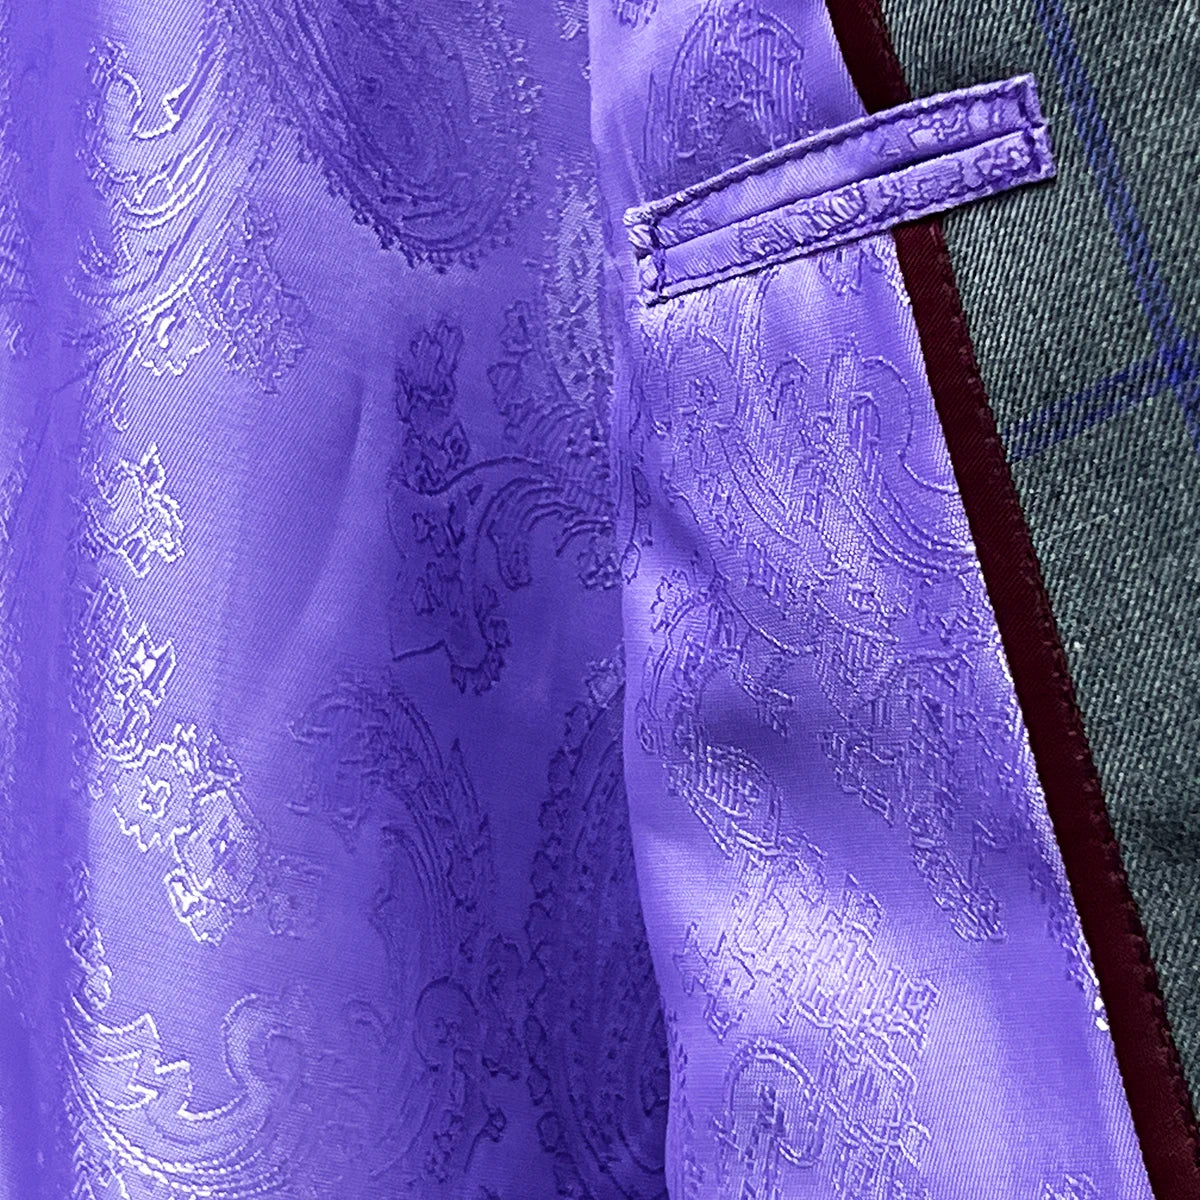 Flash linings inside the grey purple windowpane sportcoat.